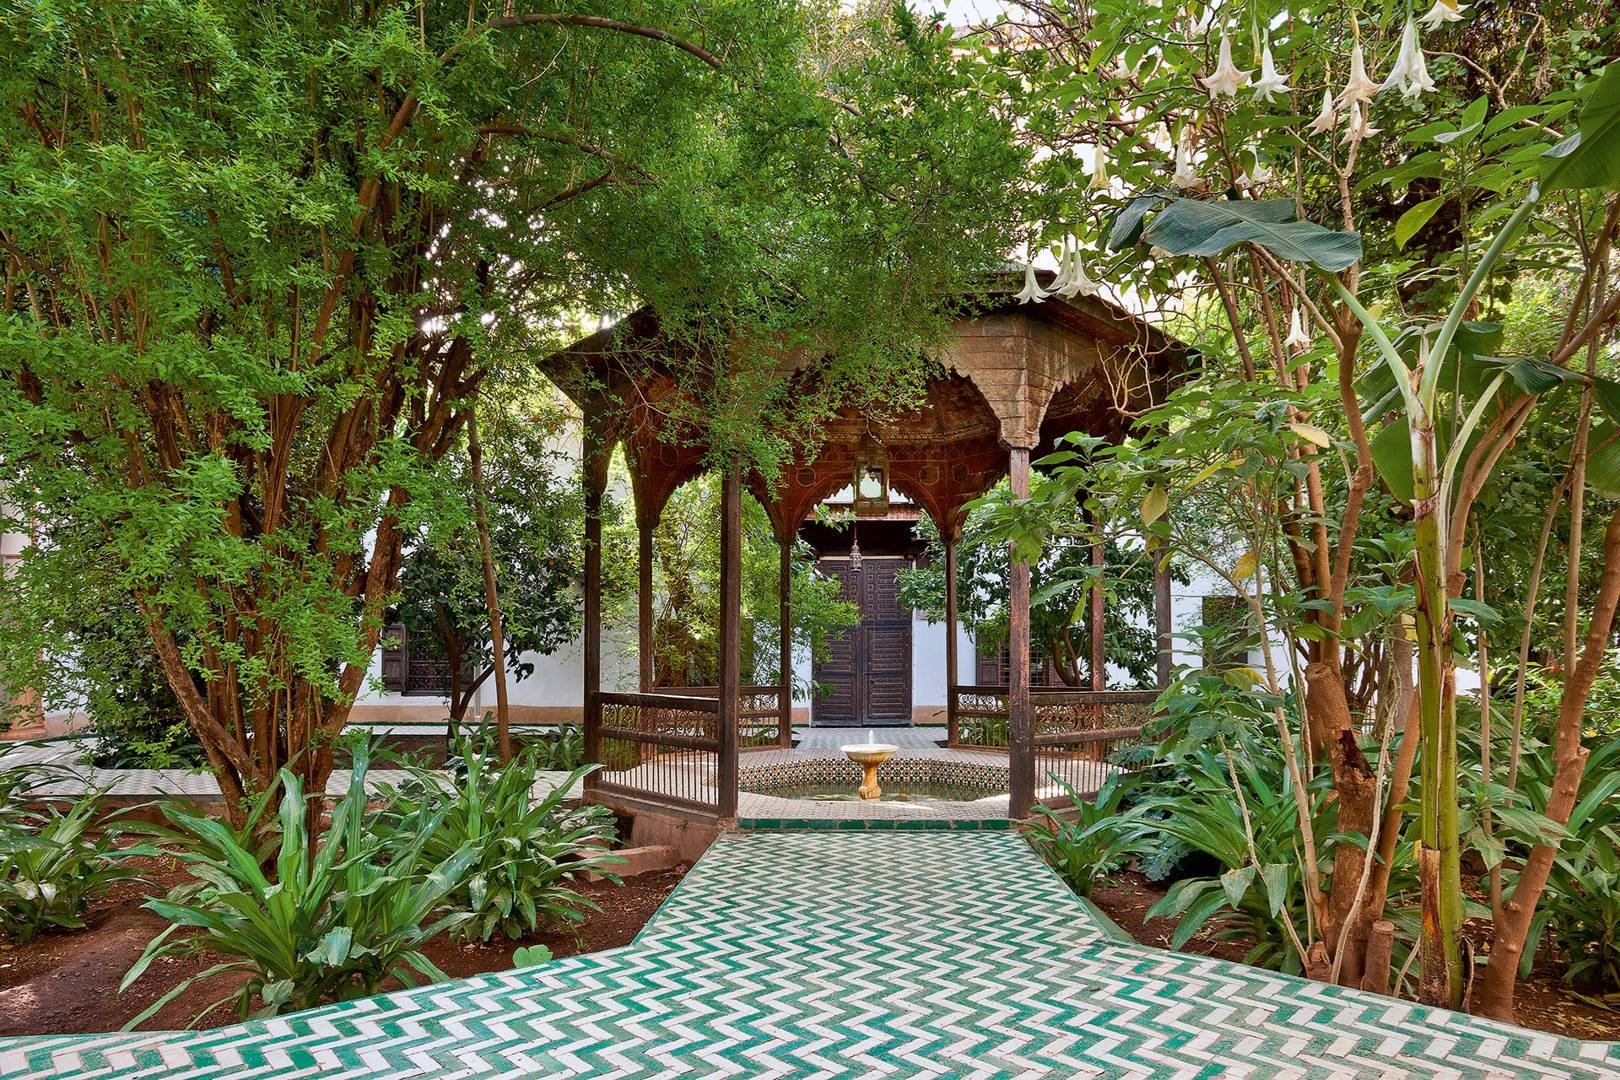 Восточная беседка. Мусульманские сады мавританский стиль ландшафта. Восточный стиль ландшафтный дизайн Марокко. Мавританский сад розарий. Пергола в Восточном стиле.